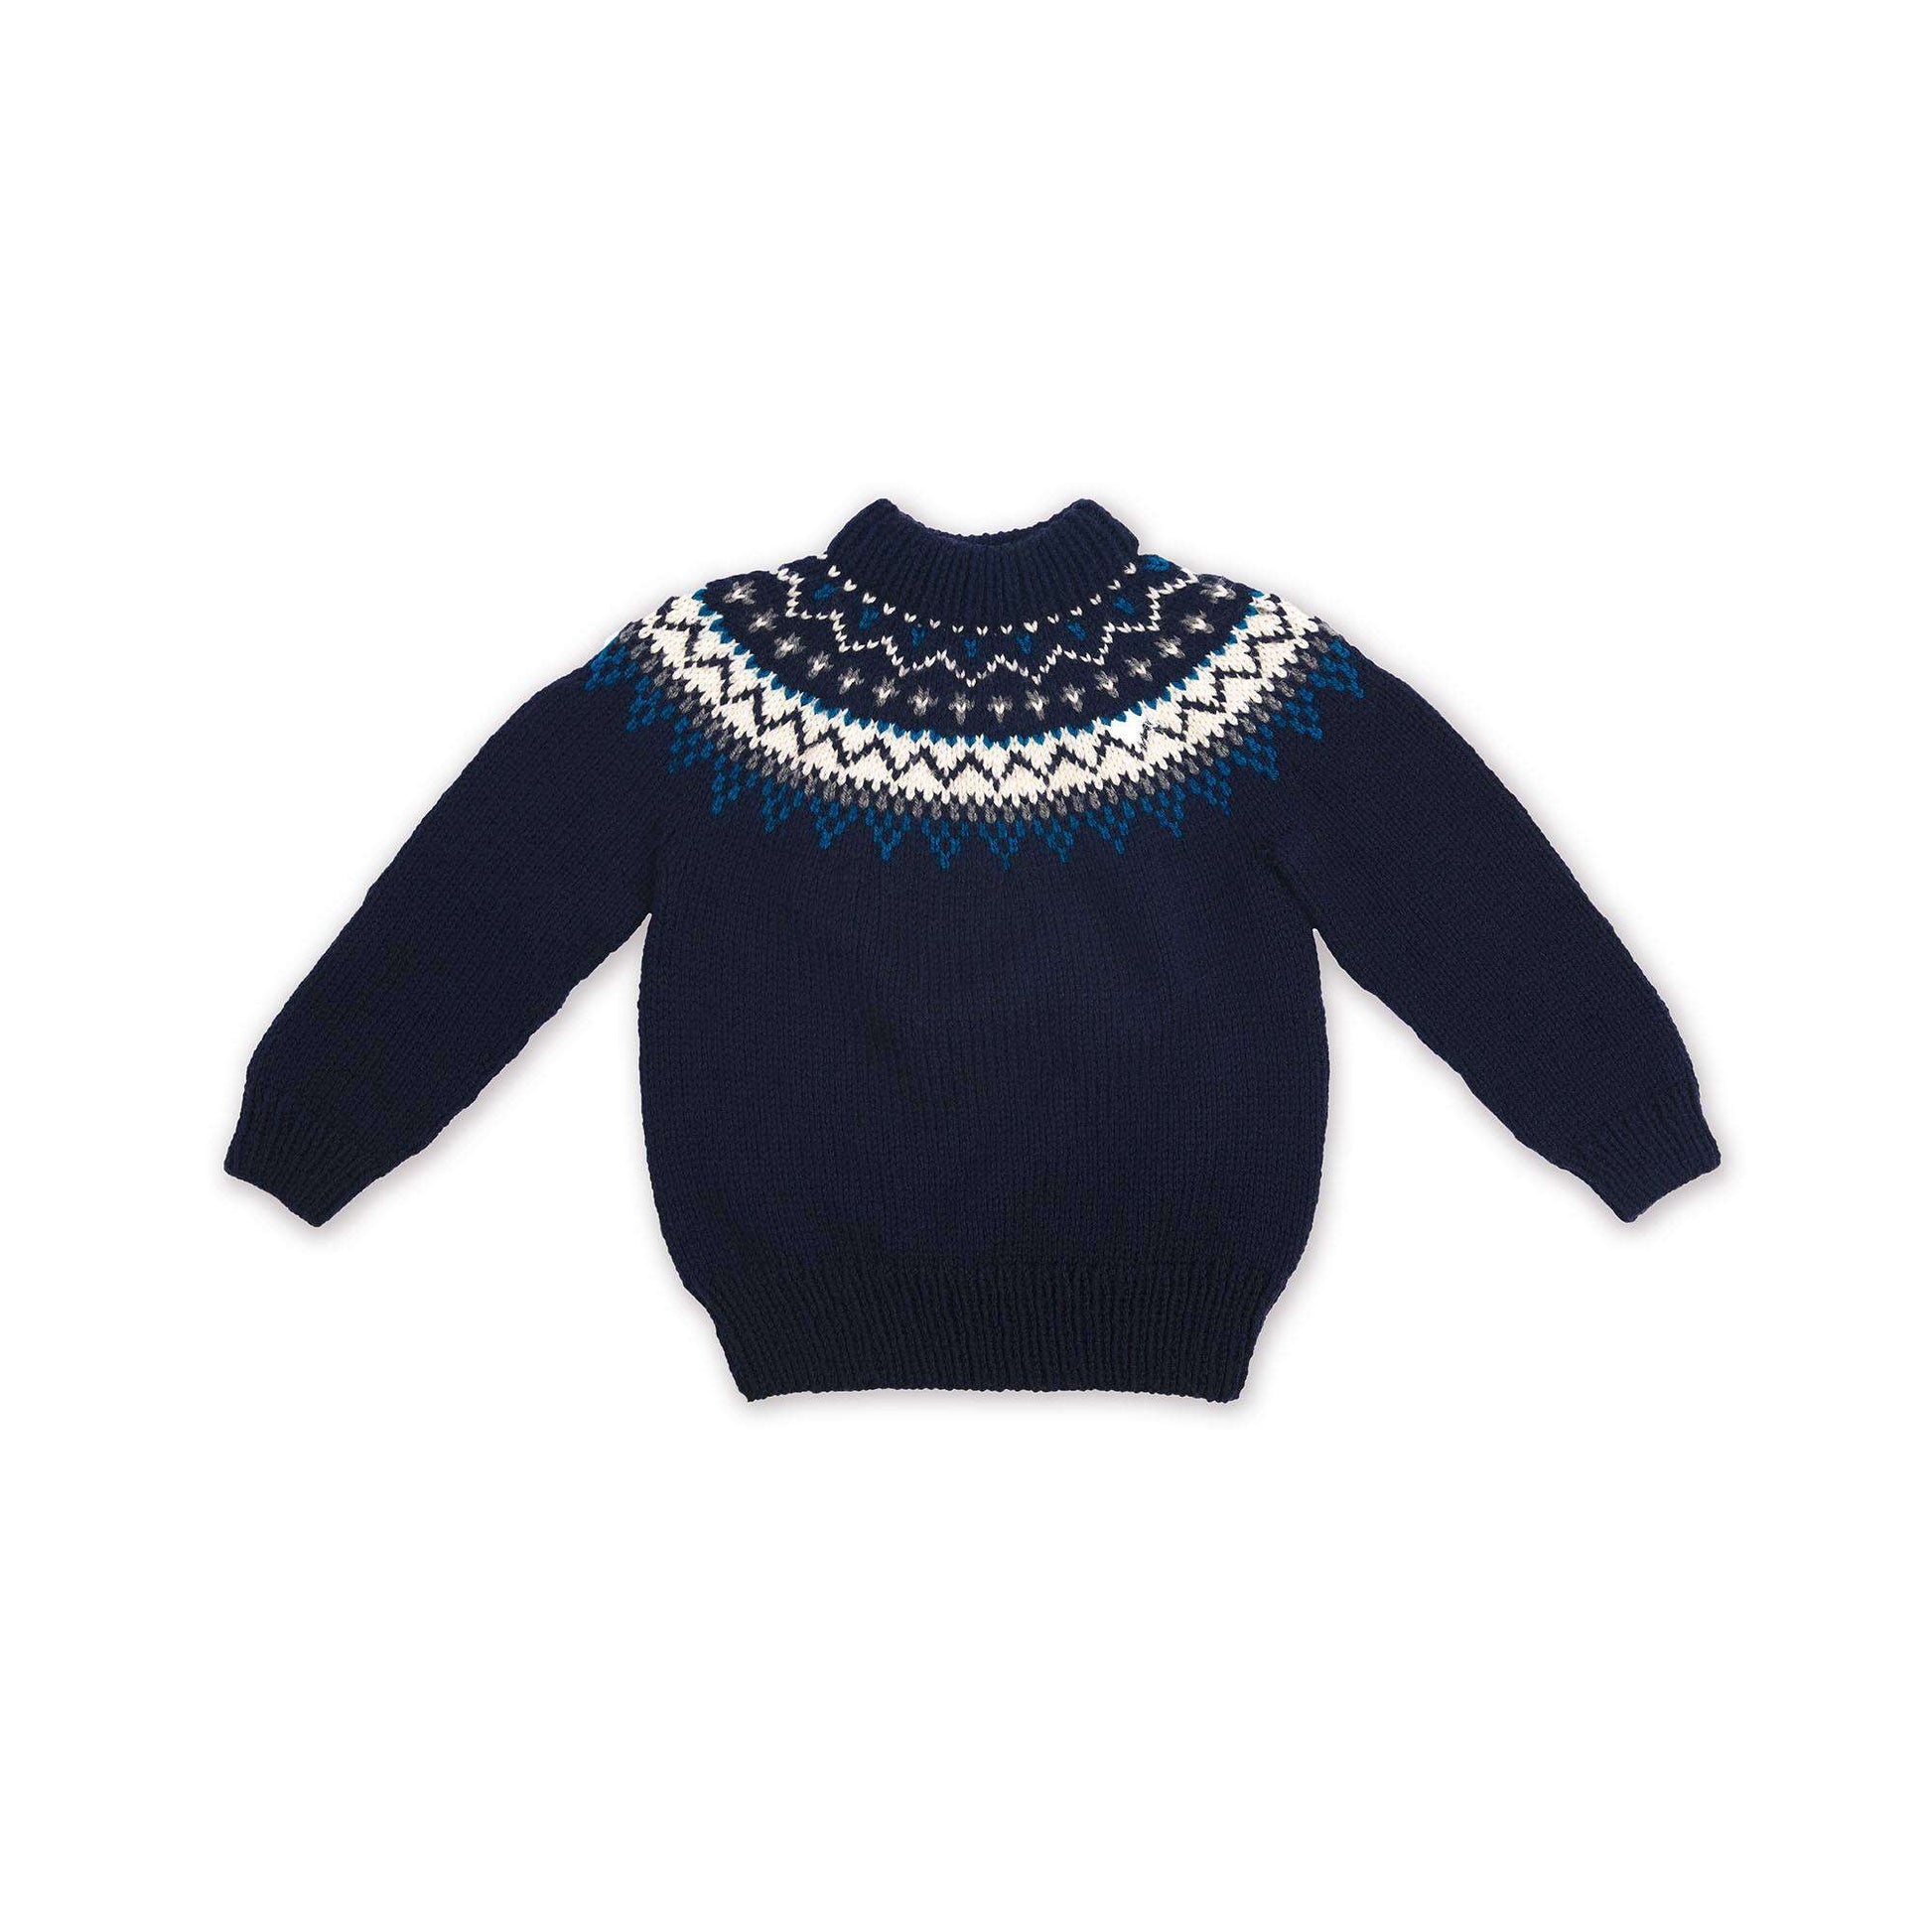 Free Bernat Family Knit Child Yoke Sweater Pattern